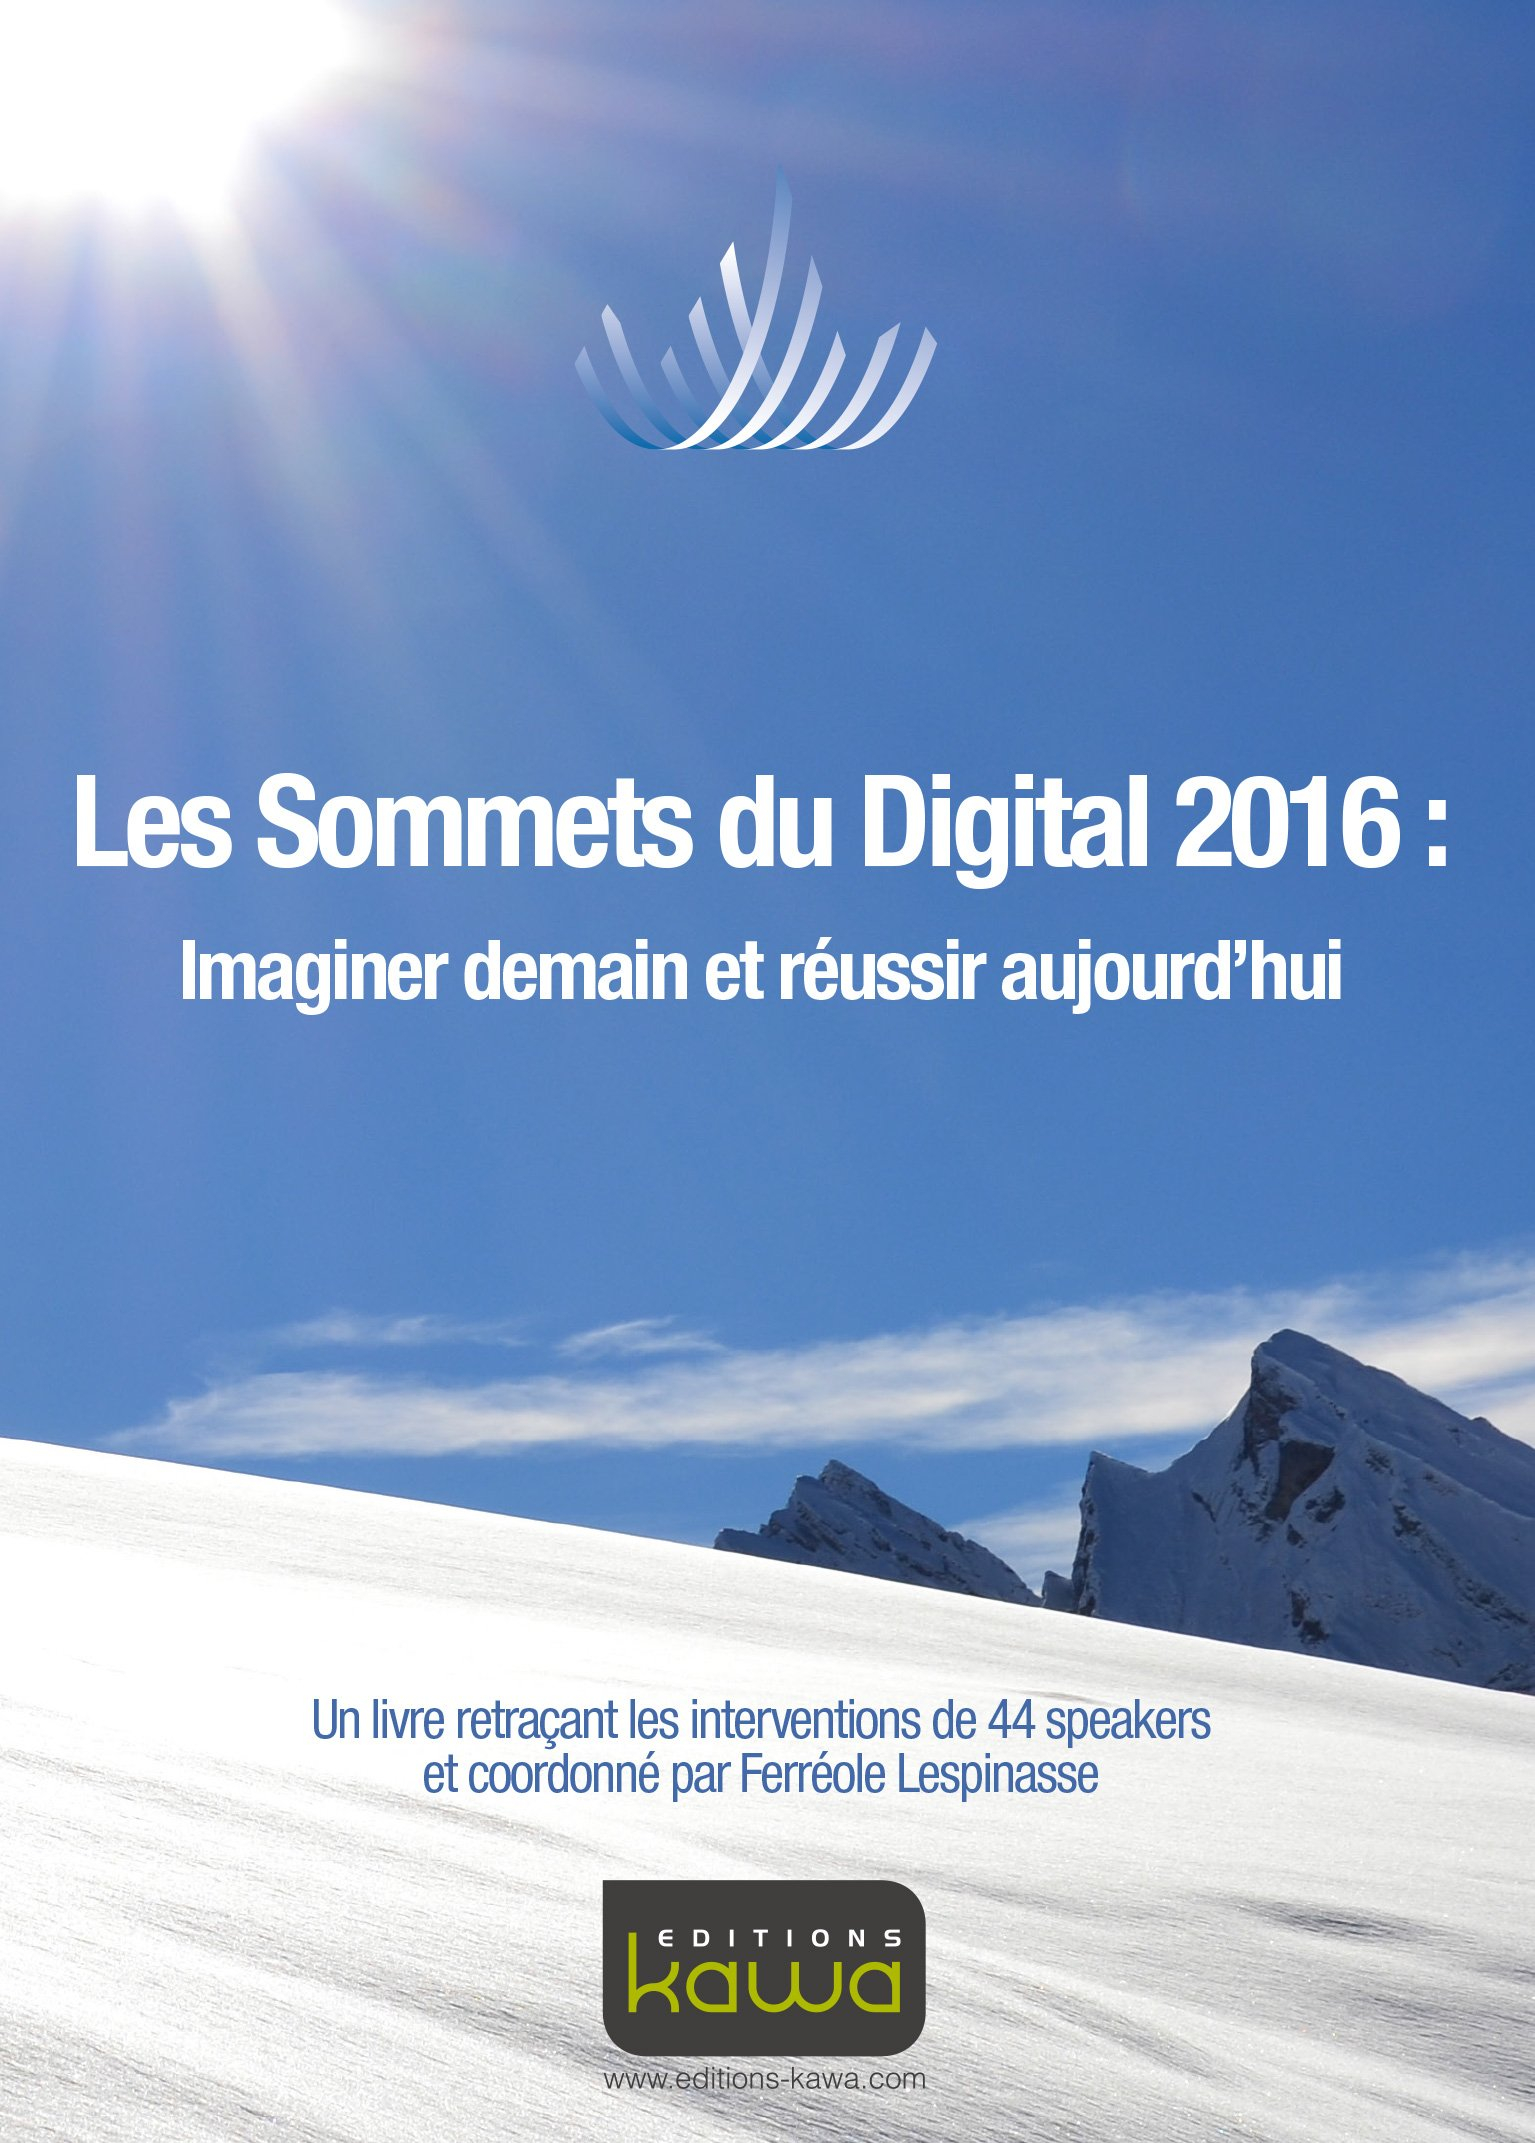 Les Sommets du Digital 2016: Imaginer demain et réussir aujourd'hui